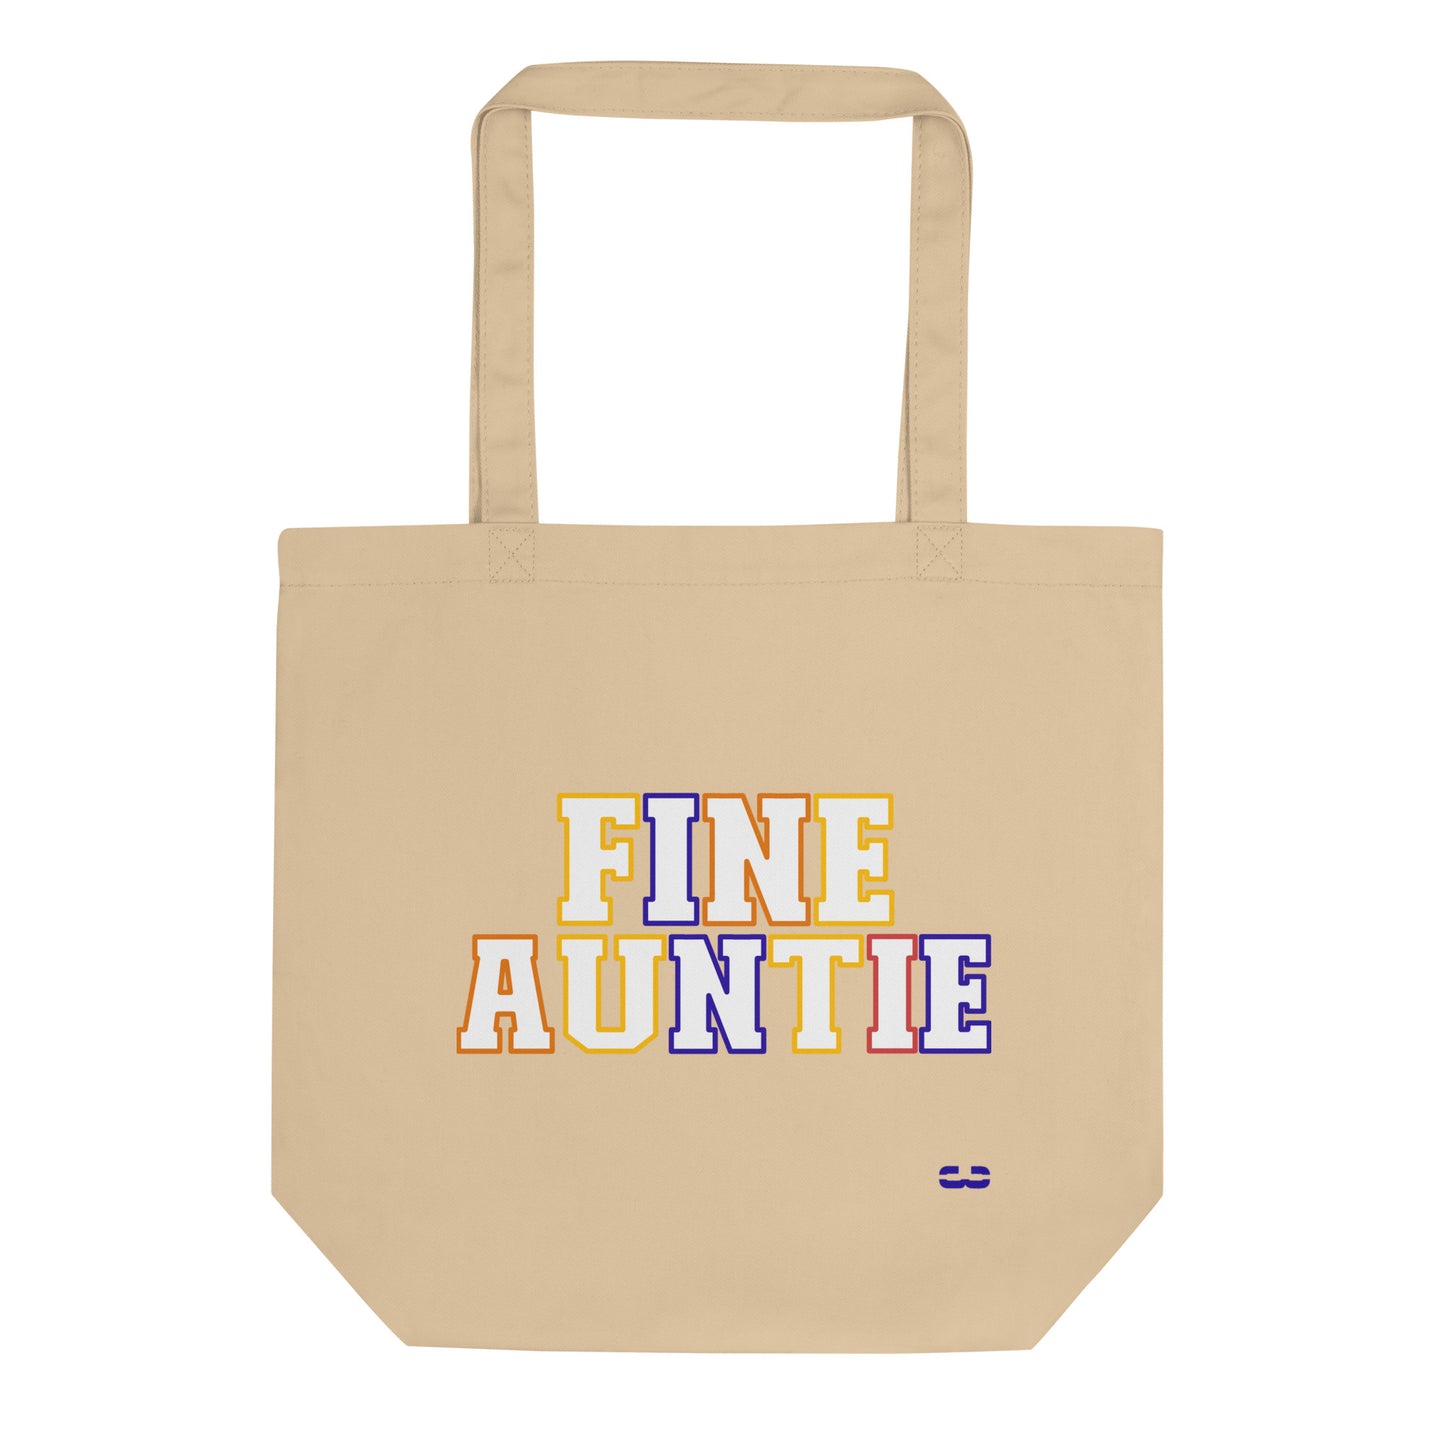 Fine Auntie Tote Bag